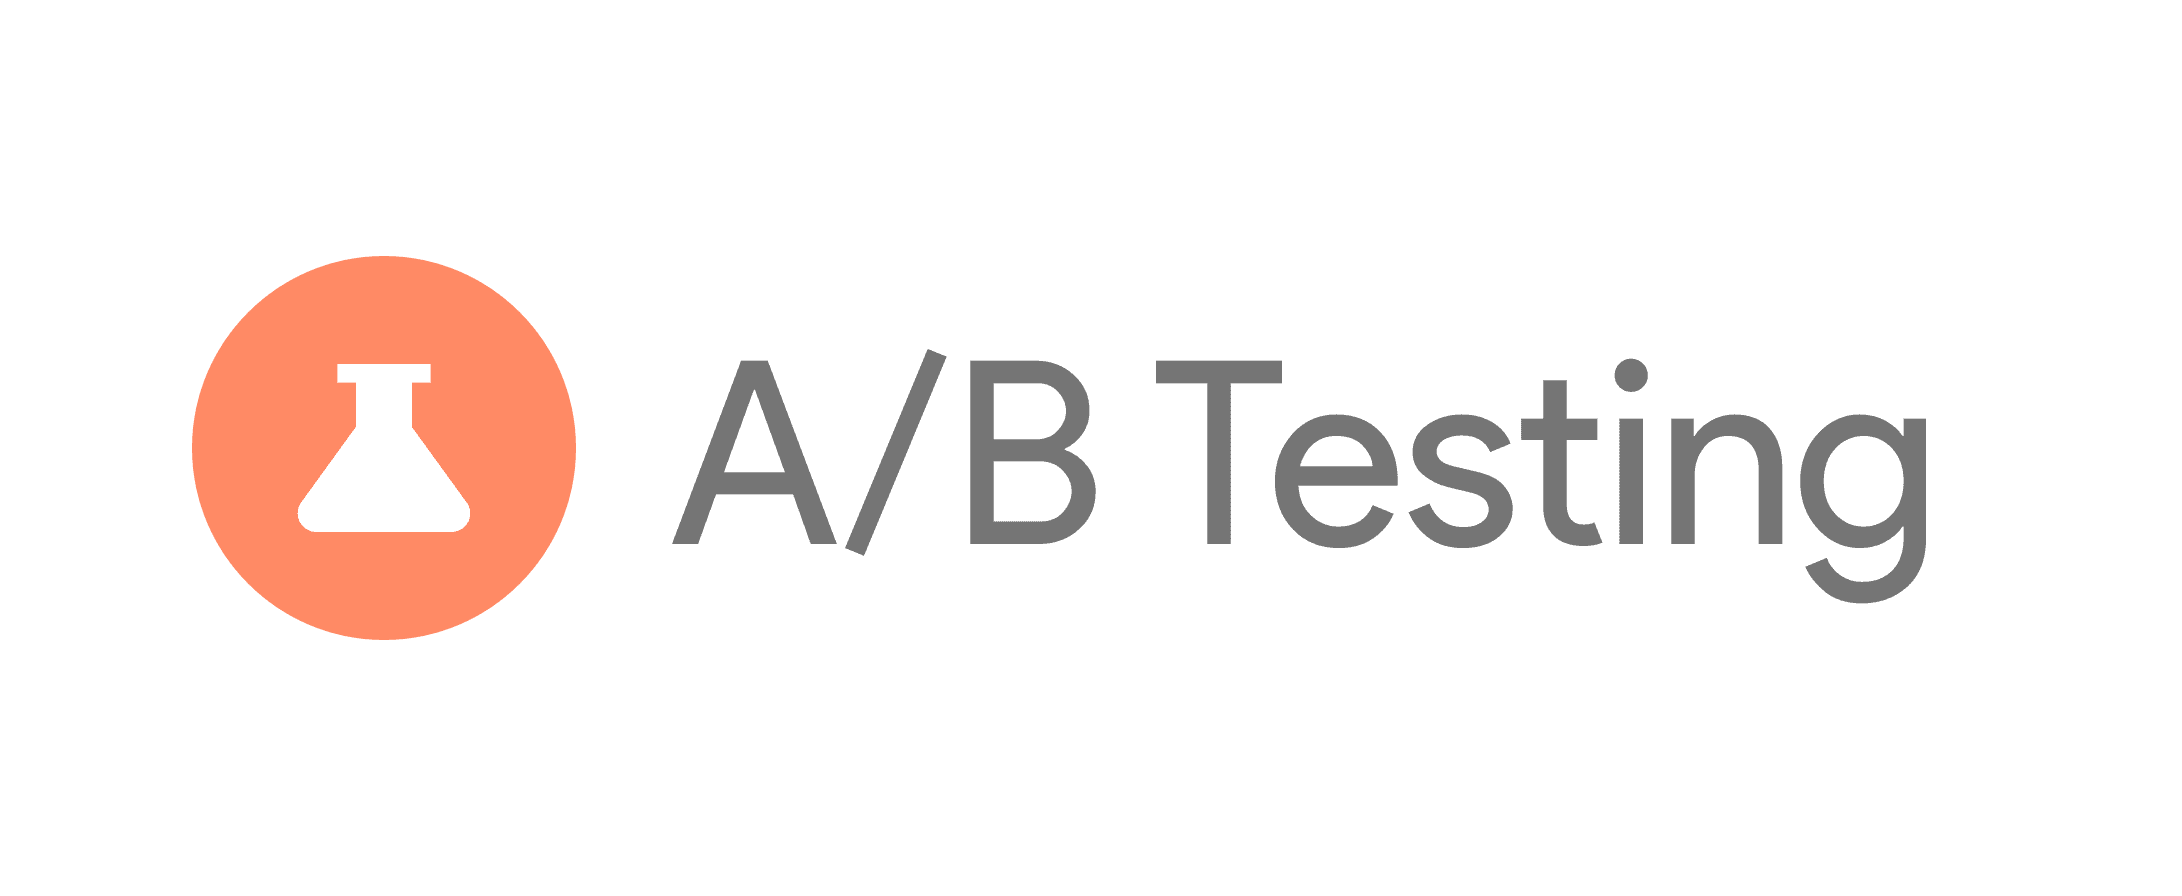 Firebase AB Testing.png